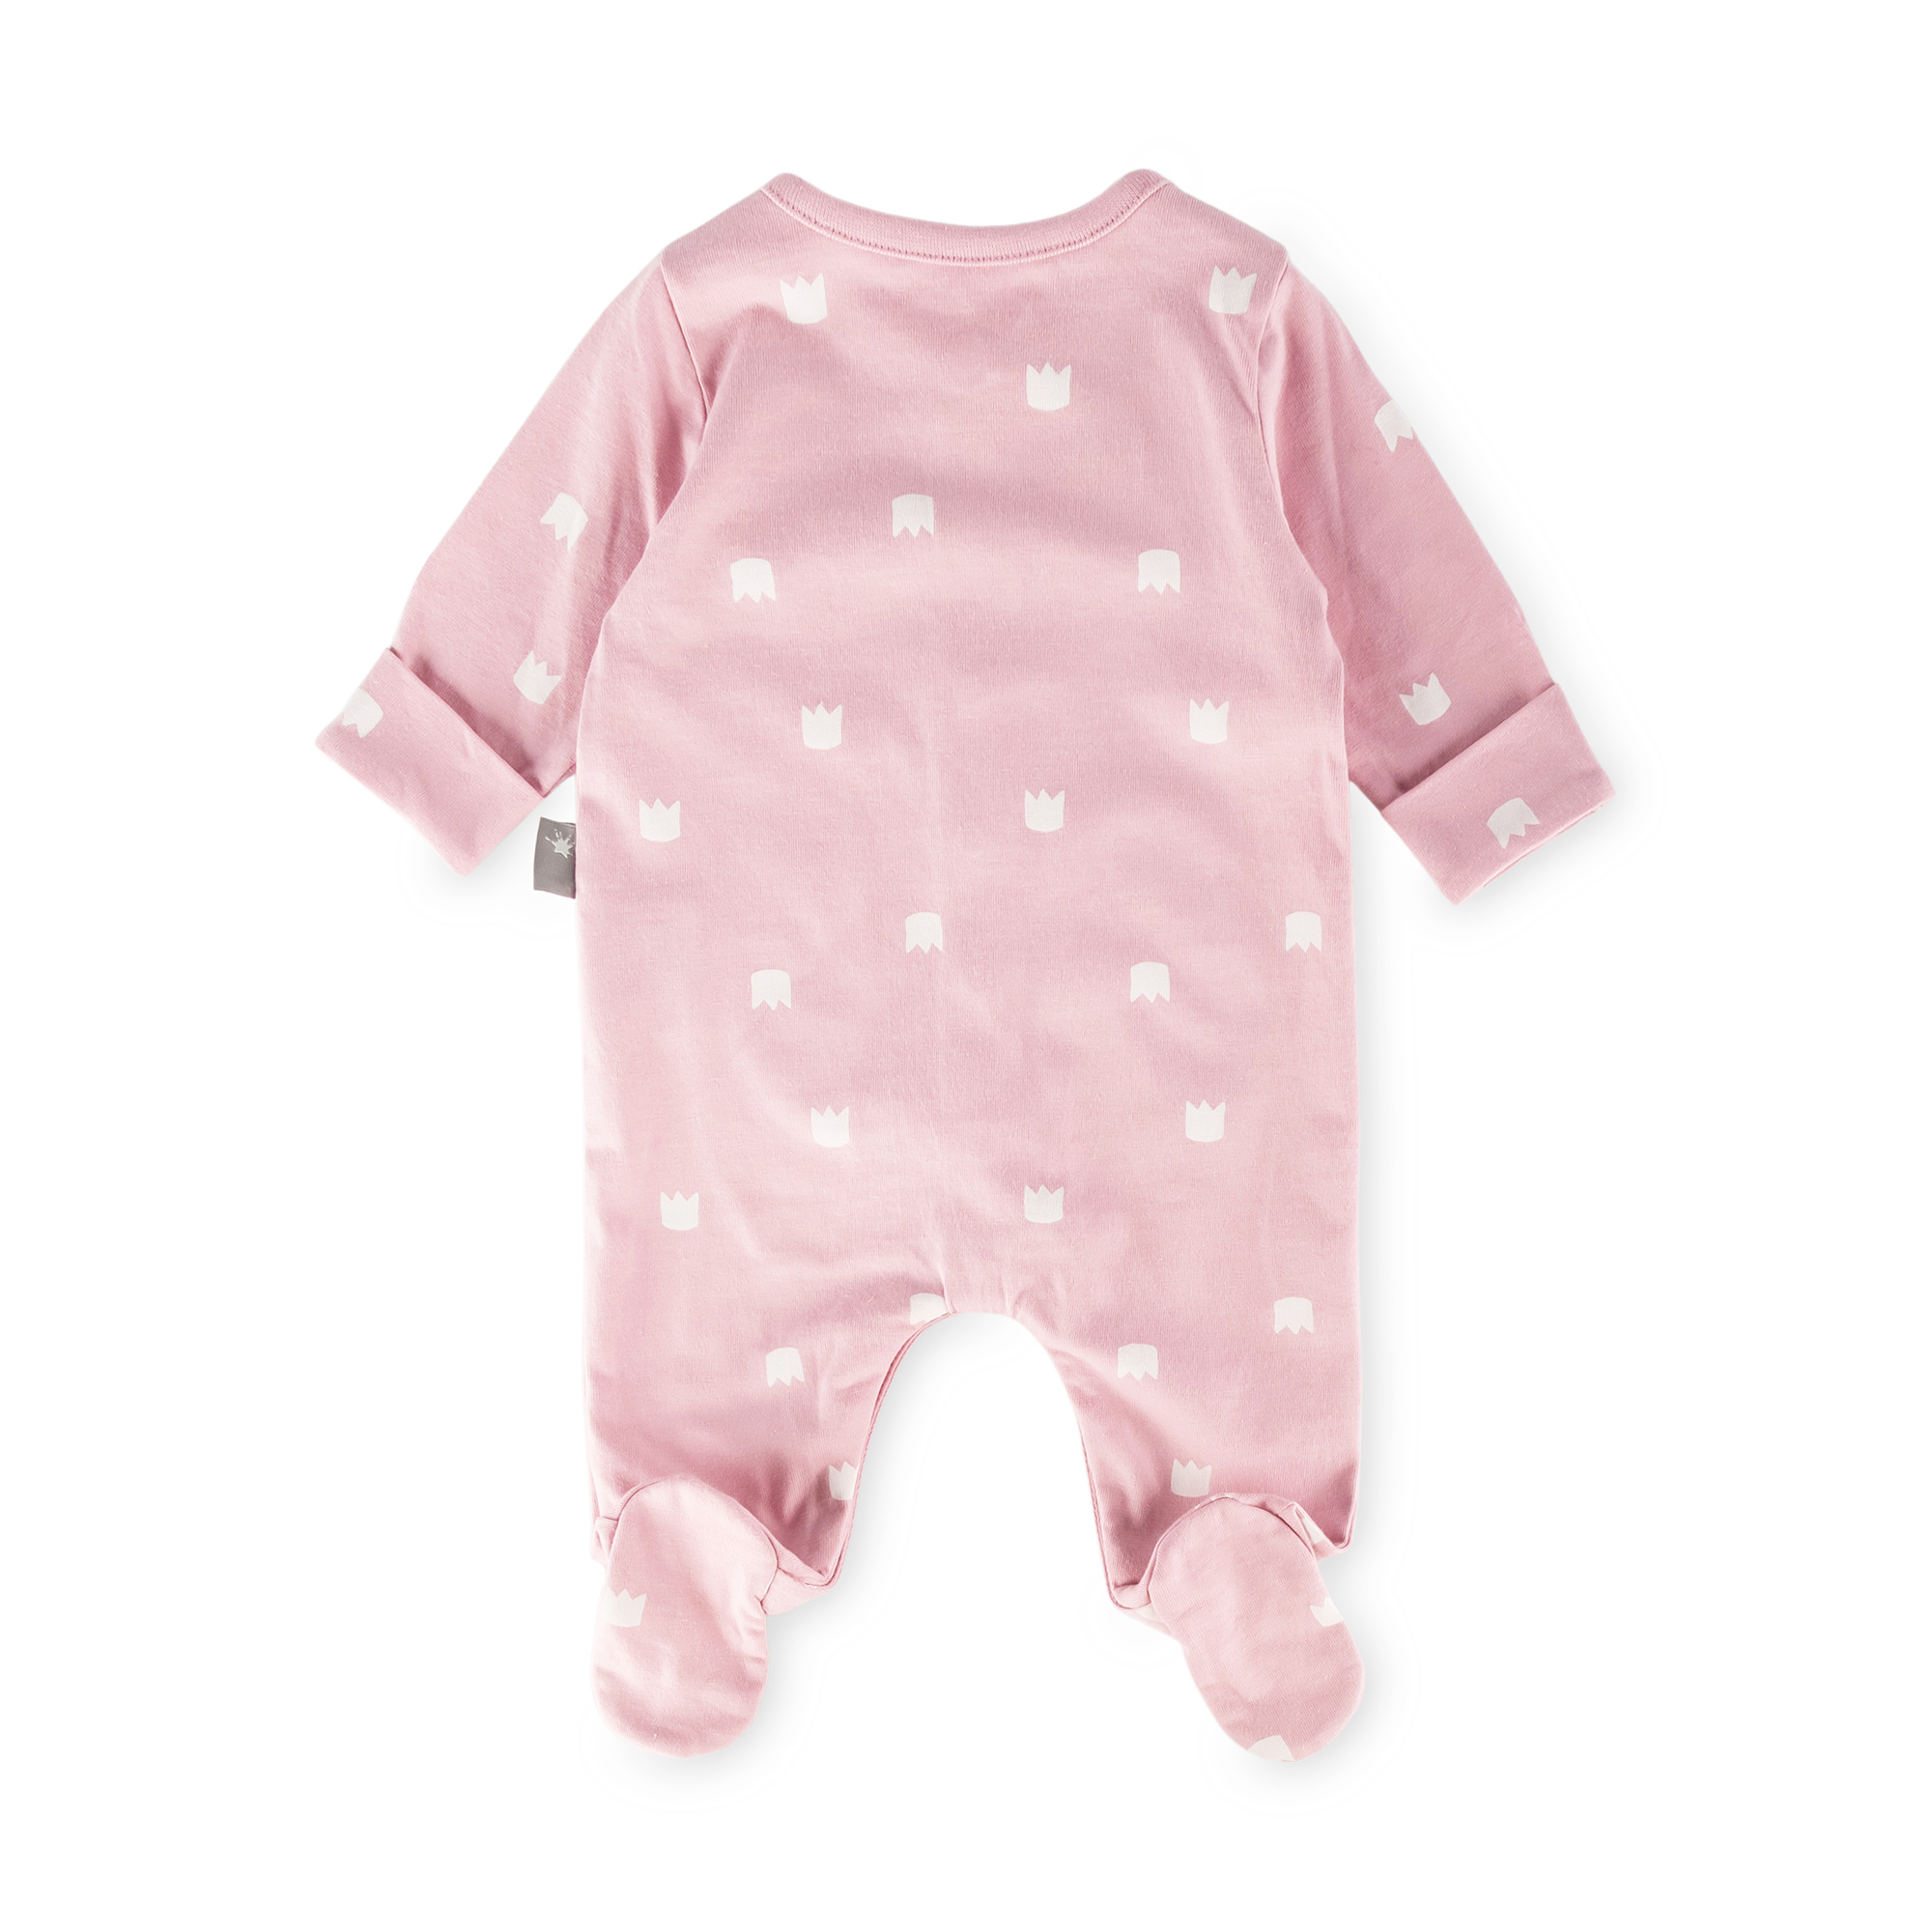 Newborn baby footed onesie romper, foldover mittens, pink